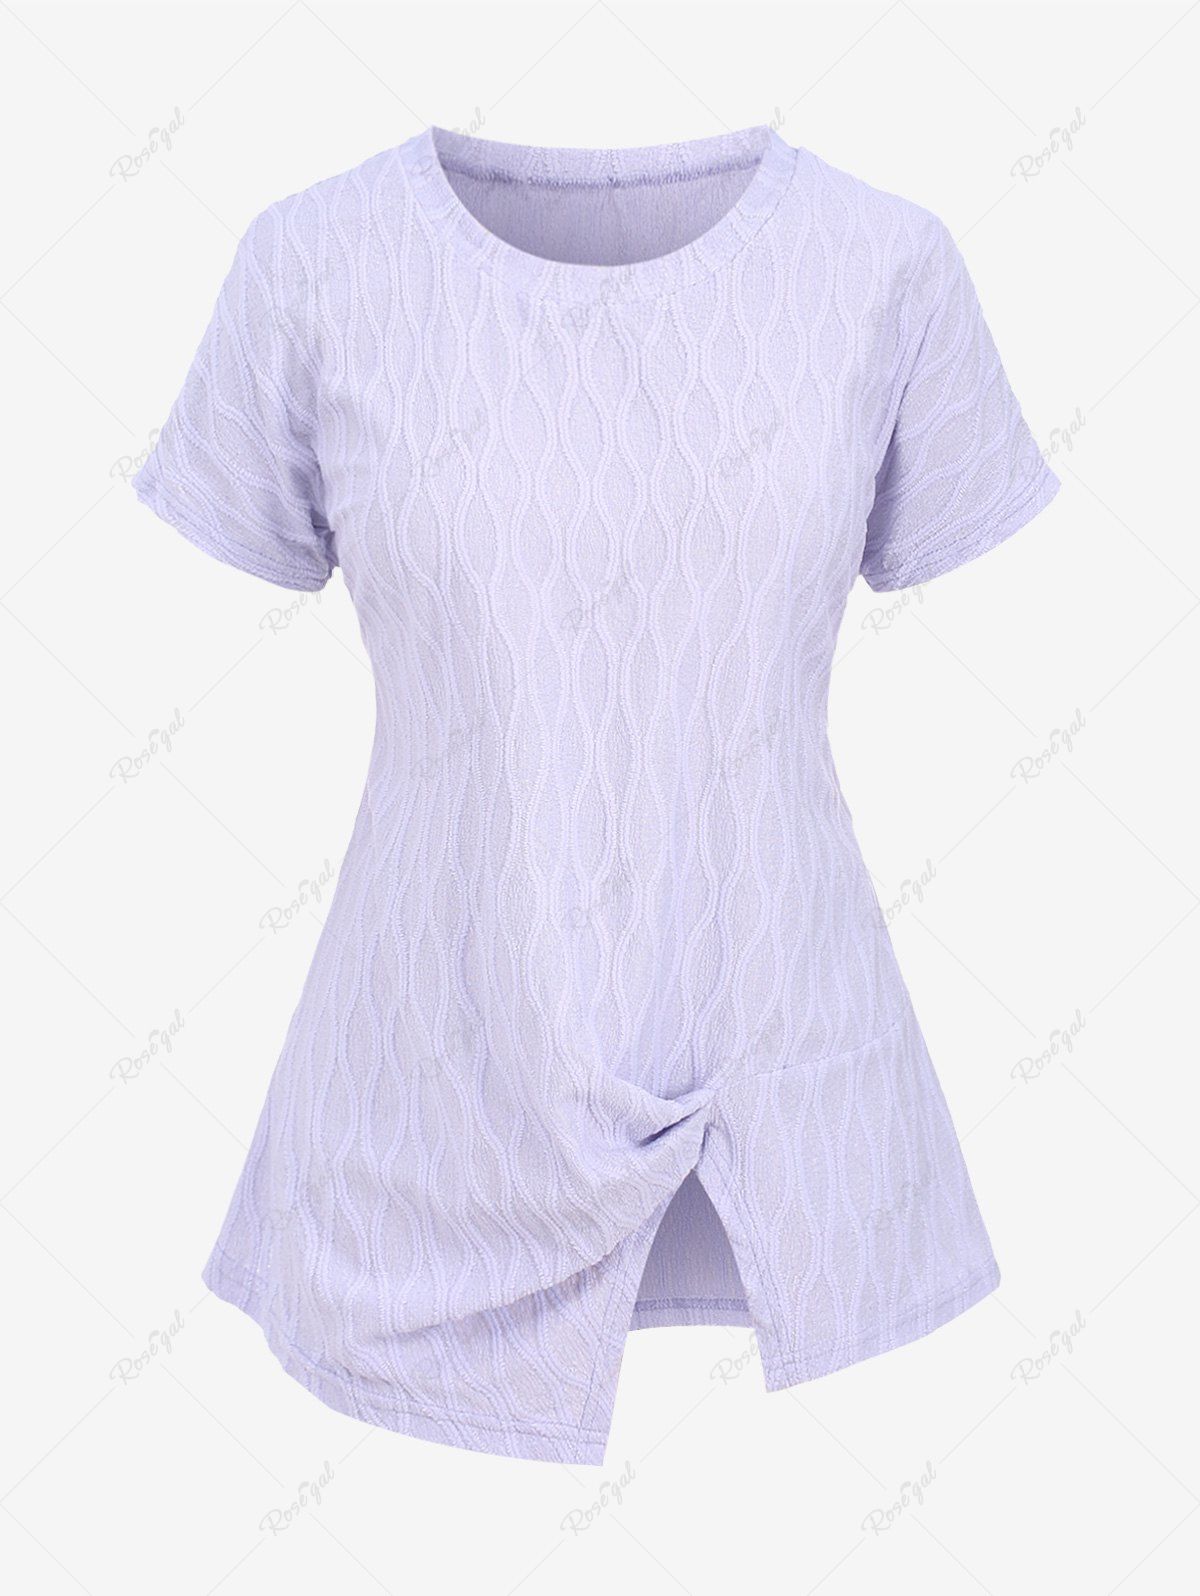 T-shirt Texturé Fendu de Grande Taille à Volants Violet clair 3XL